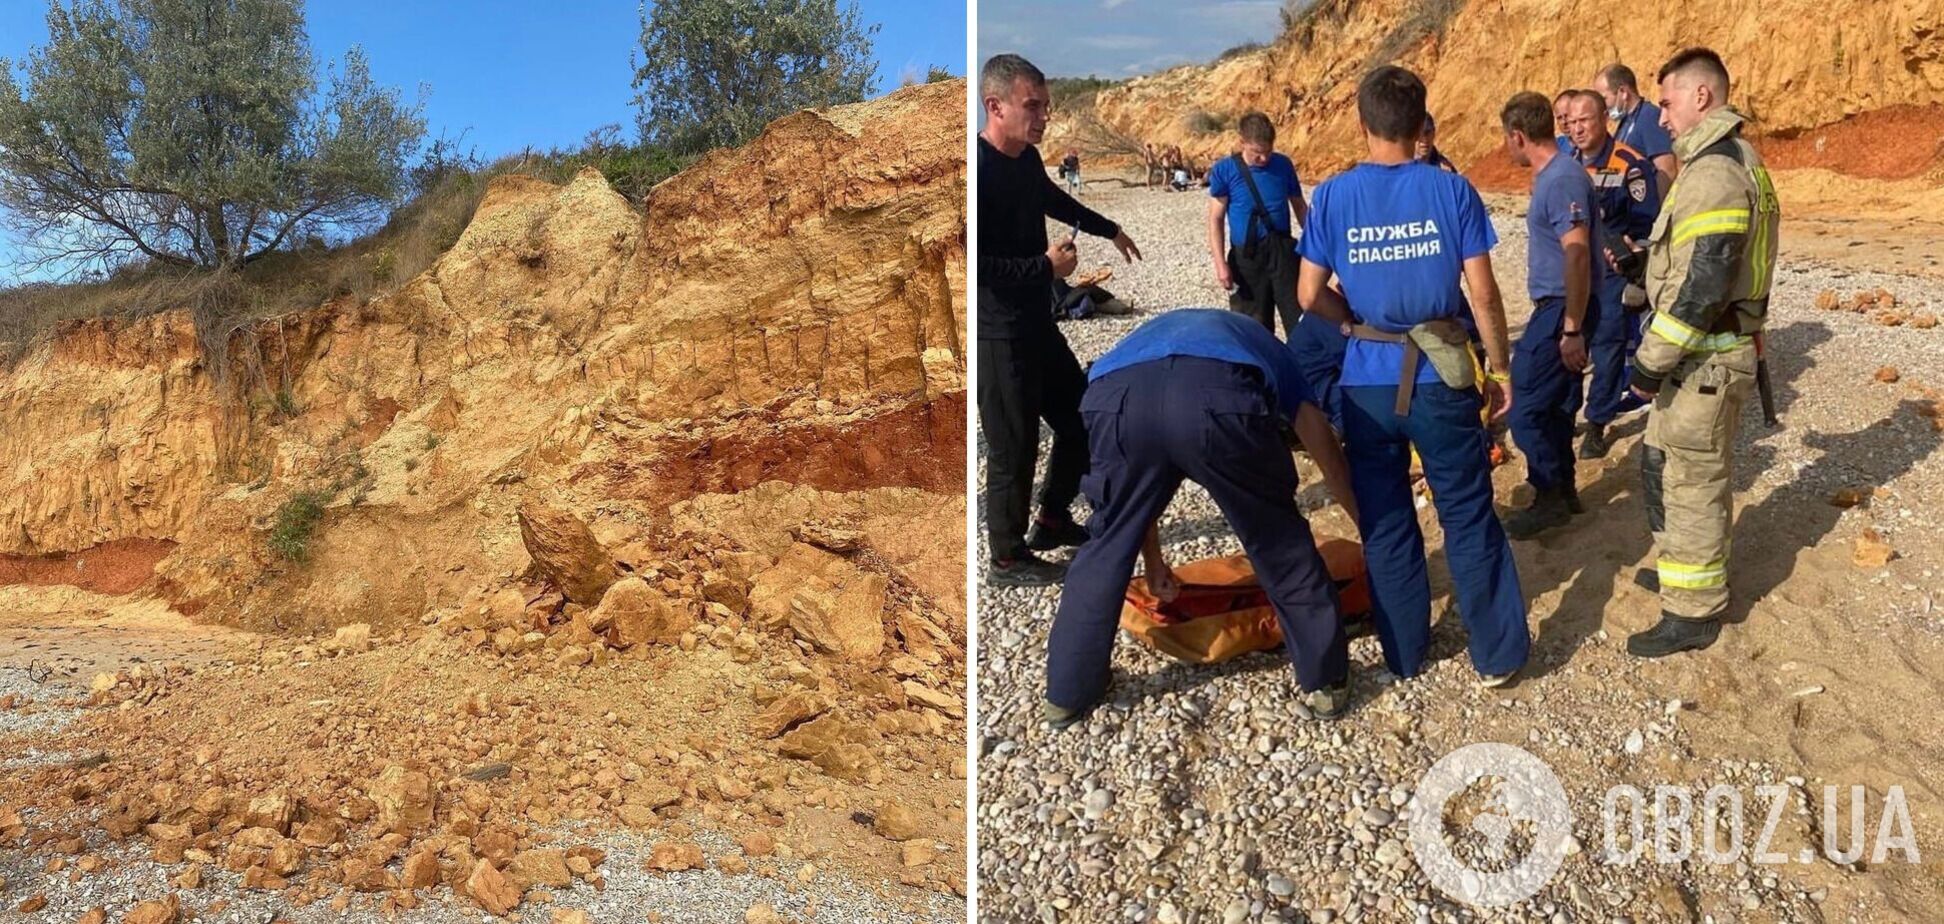 В Крыму произошел обвал грунта на пляже, двое пострадавших в тяжелом состоянии